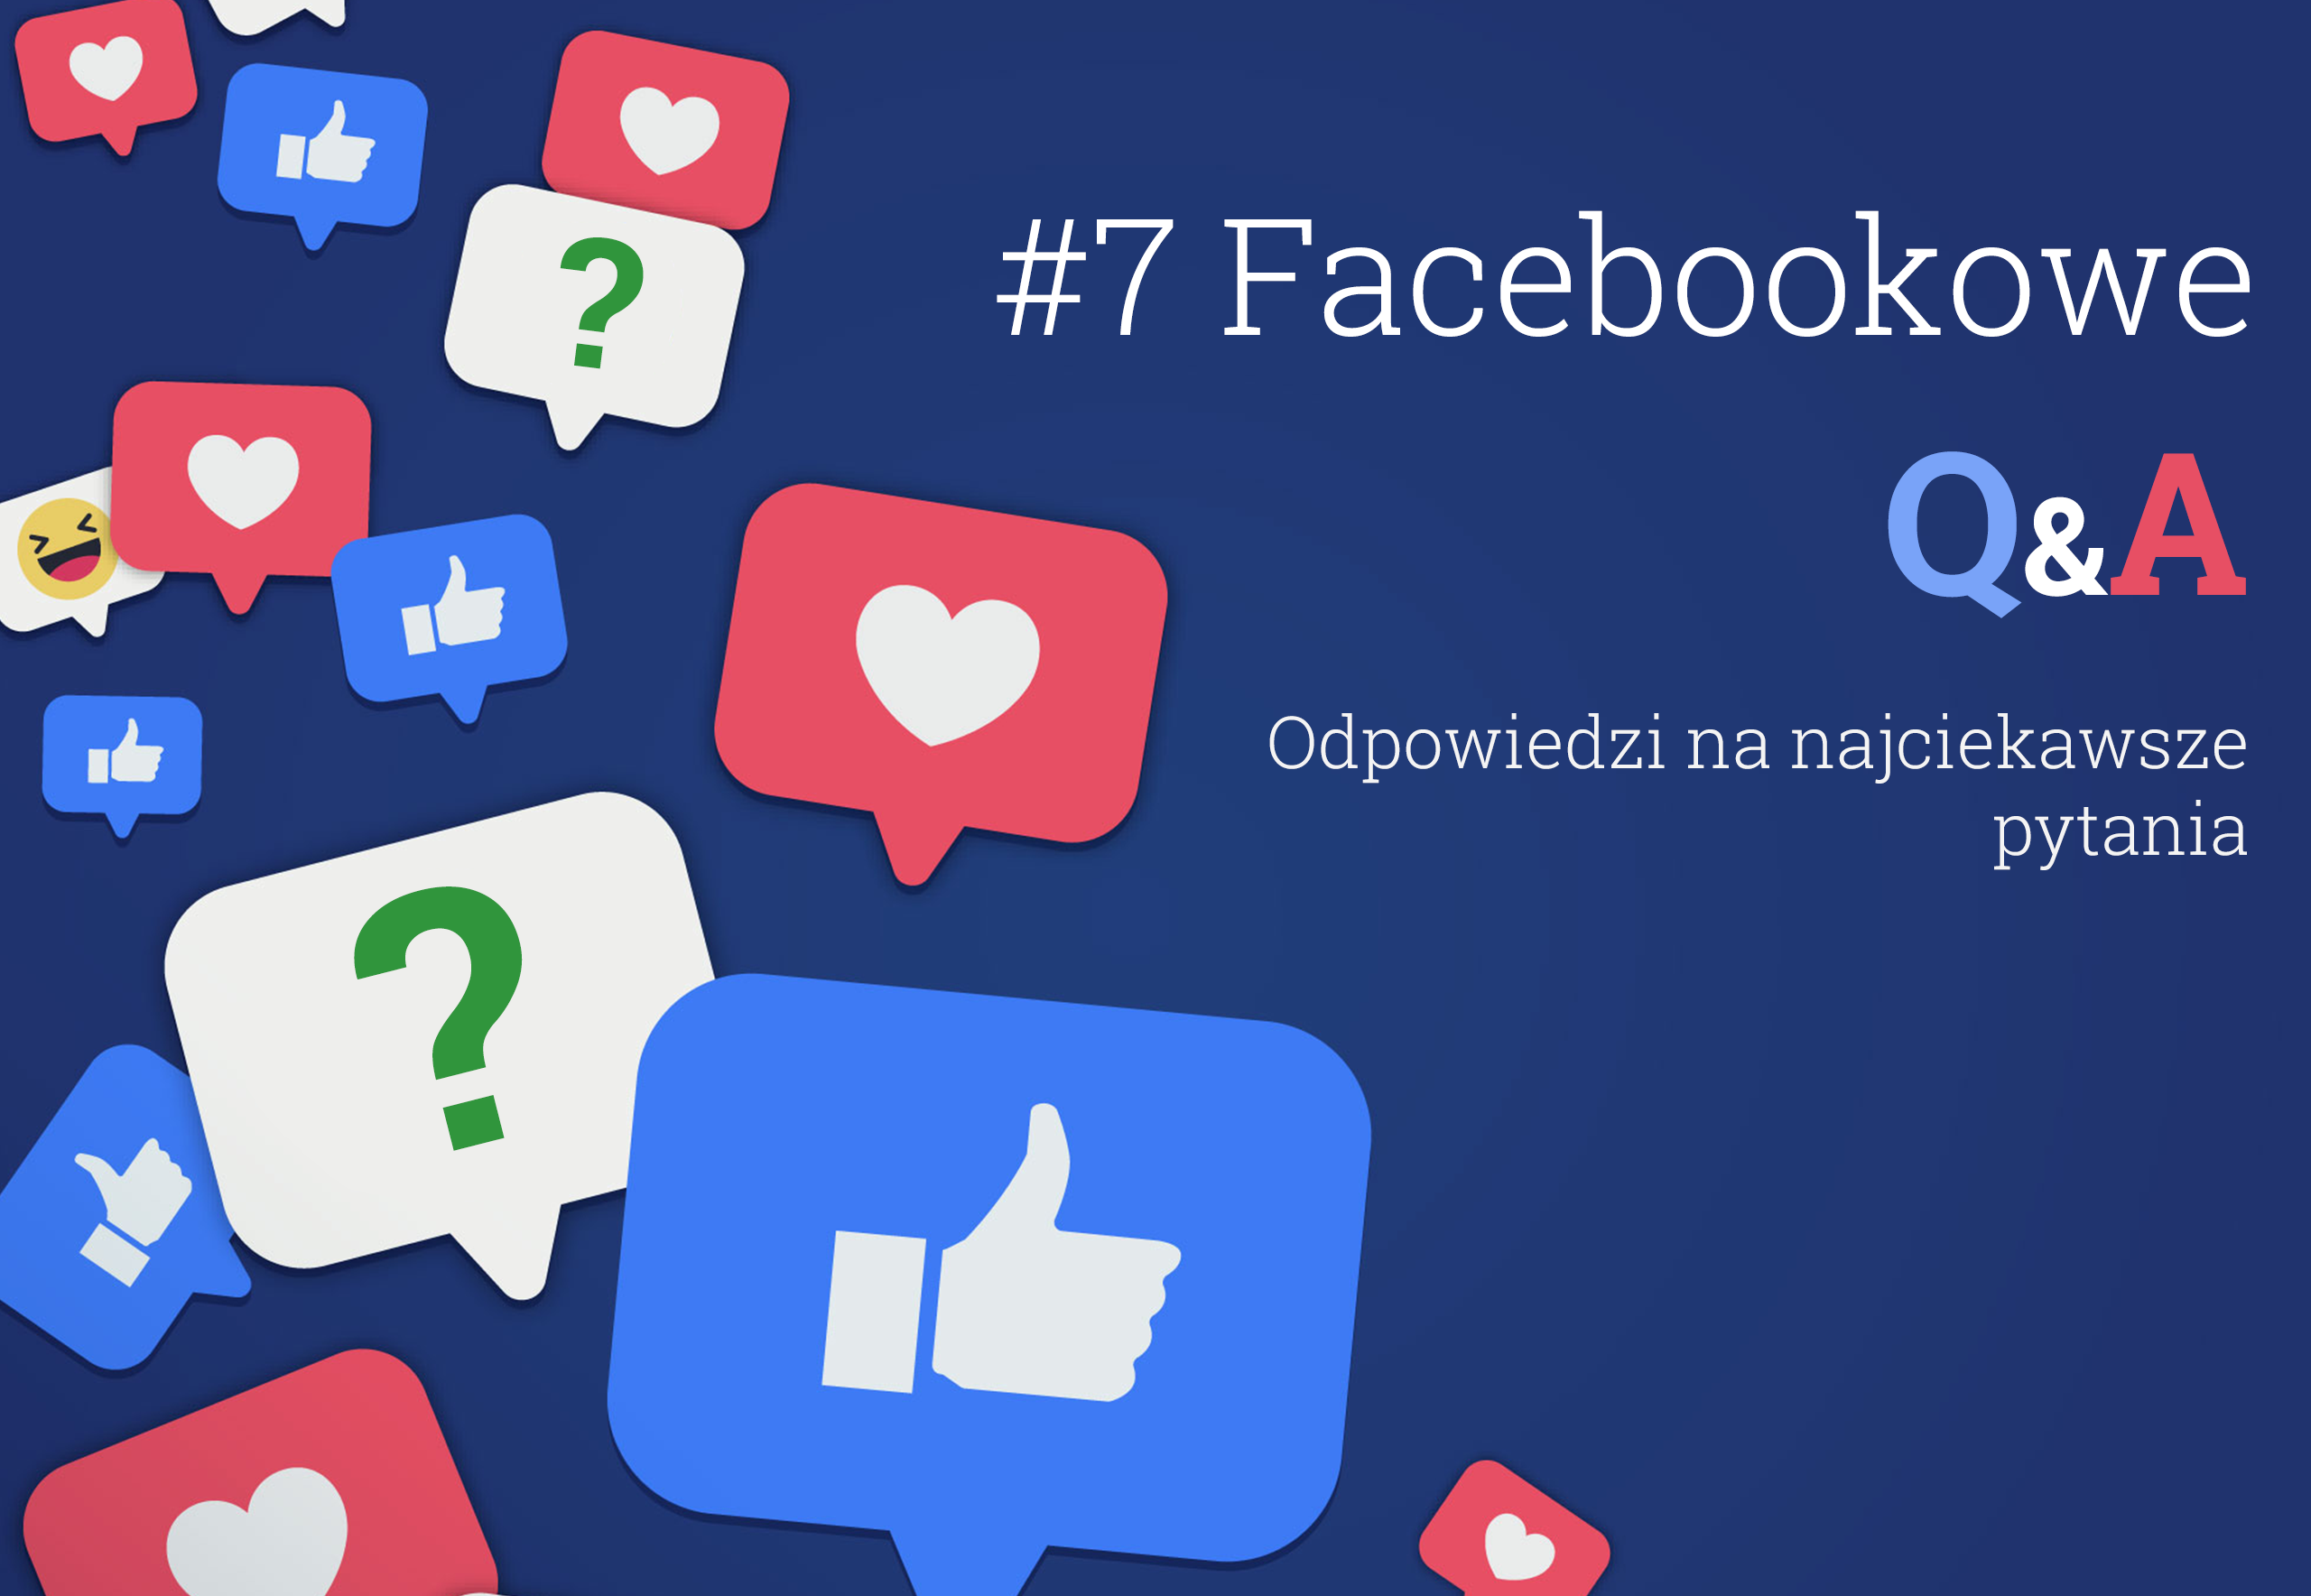 Facebookowe Q&A pytania i odpowiedzi